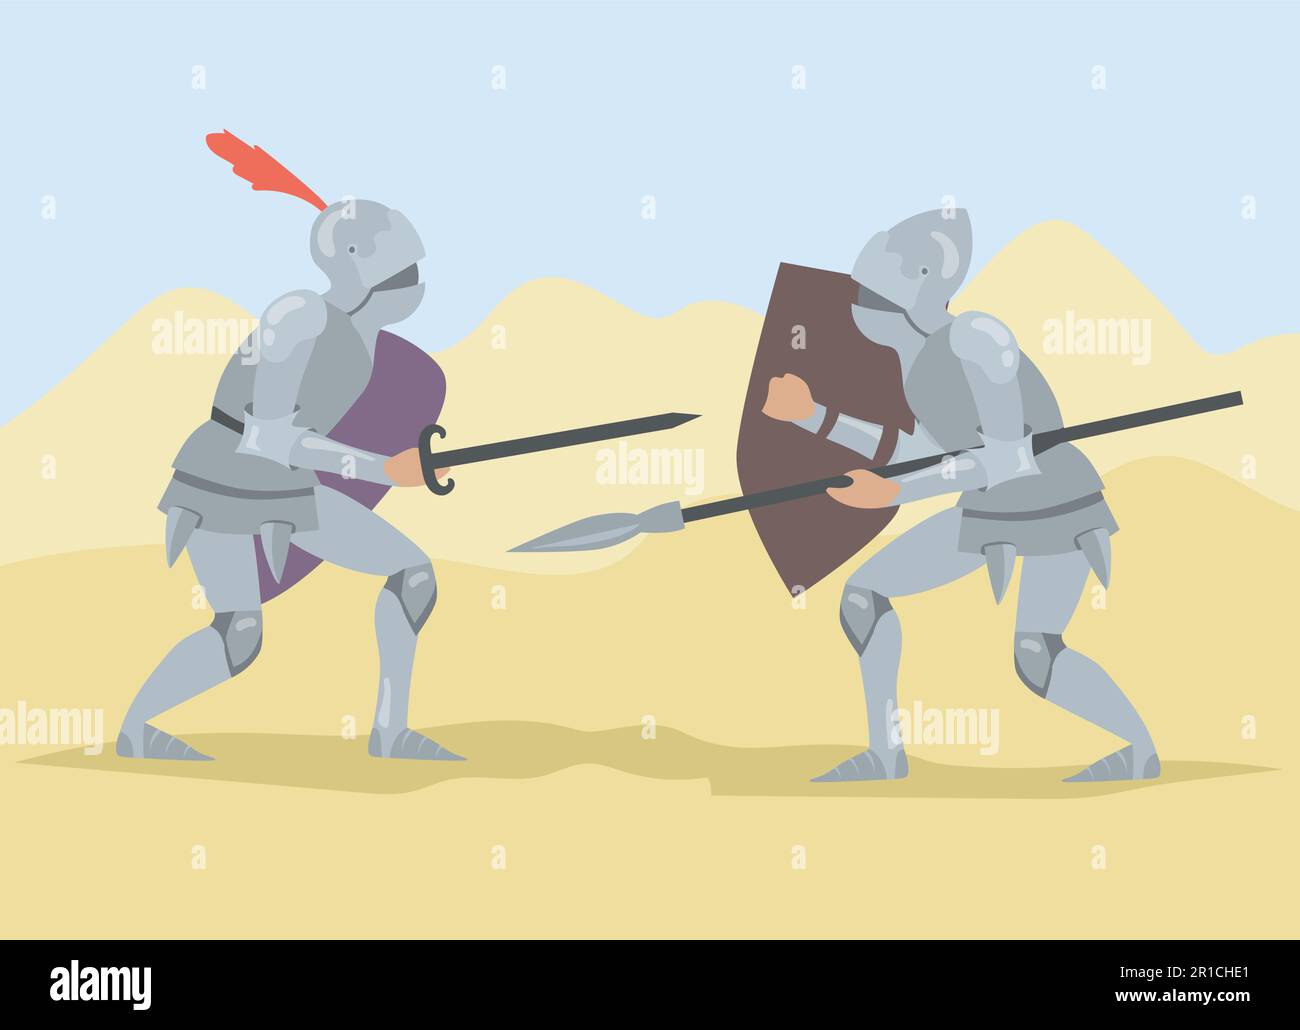 Ritter kämpfen mit Schwert und Speer und halten Schilde Stock-Vektorgrafik  - Alamy